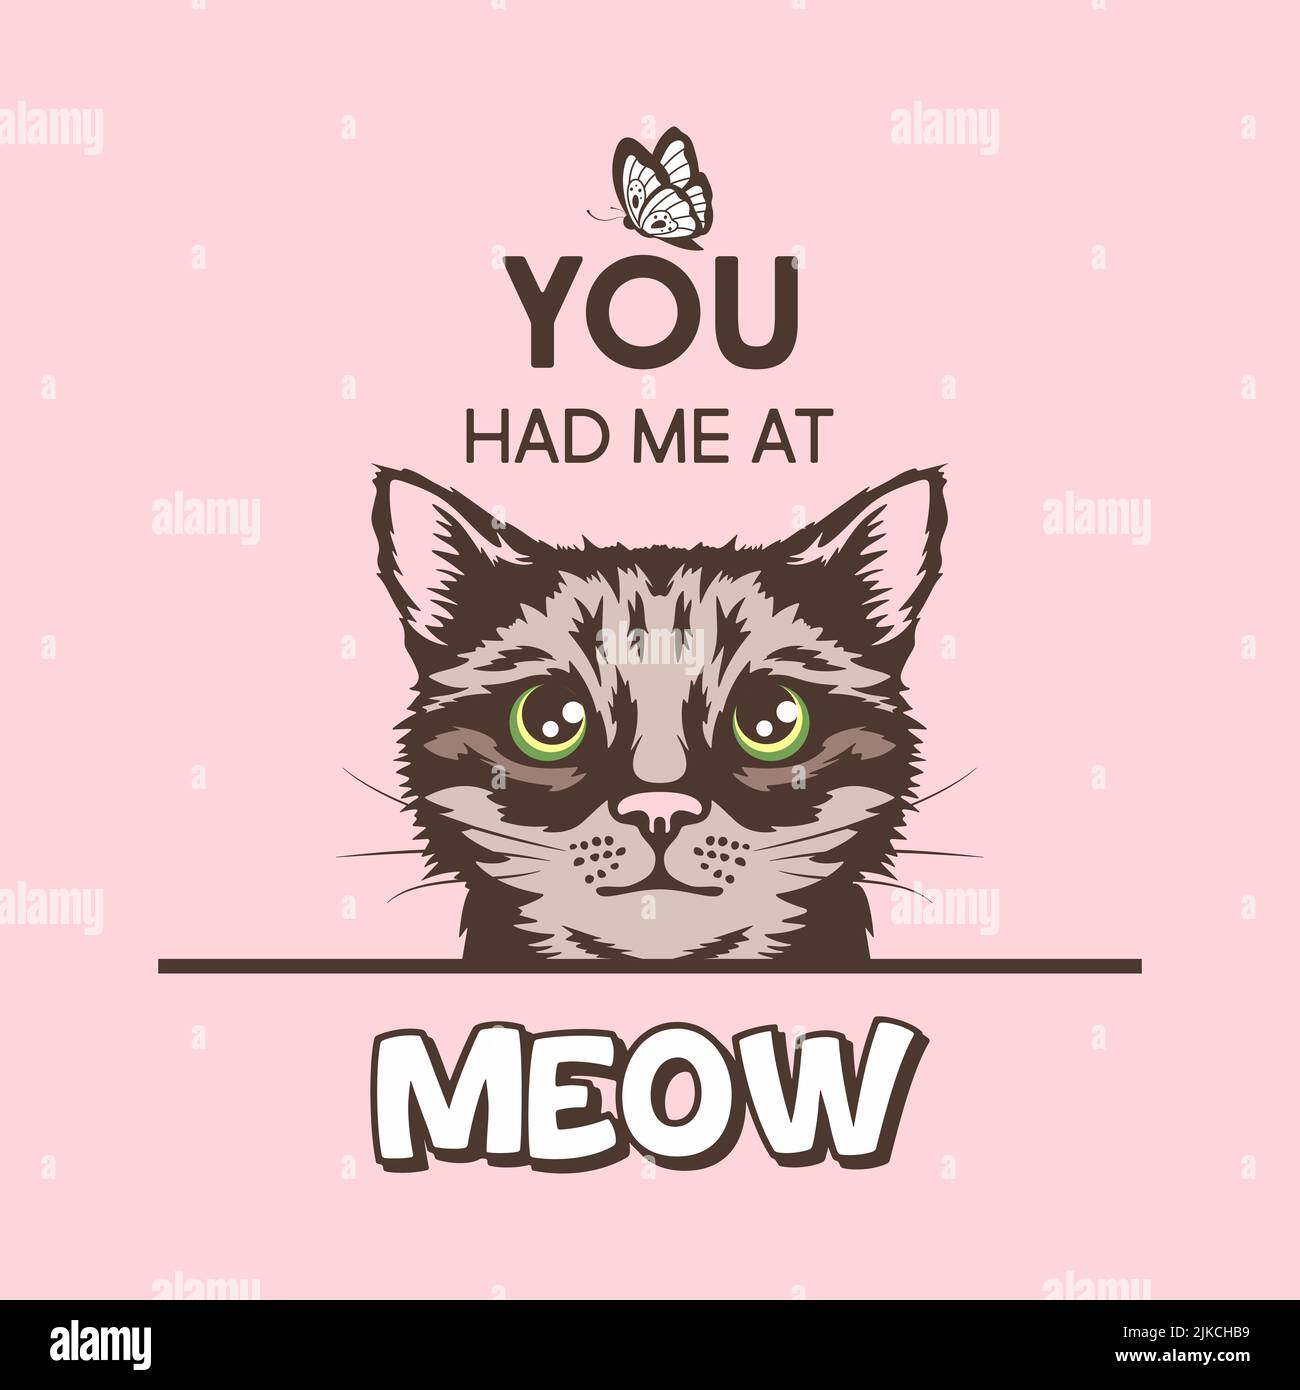 Du Hattest Mich In Meow. Vektor-Poster mit Katze Zitat und Hand gezeichnet Schwarz und Weiß versteckt Peeking Cute Kätzchen auf rosa Hintergrund. Funny Kitten ist Peeking Stock Vektor